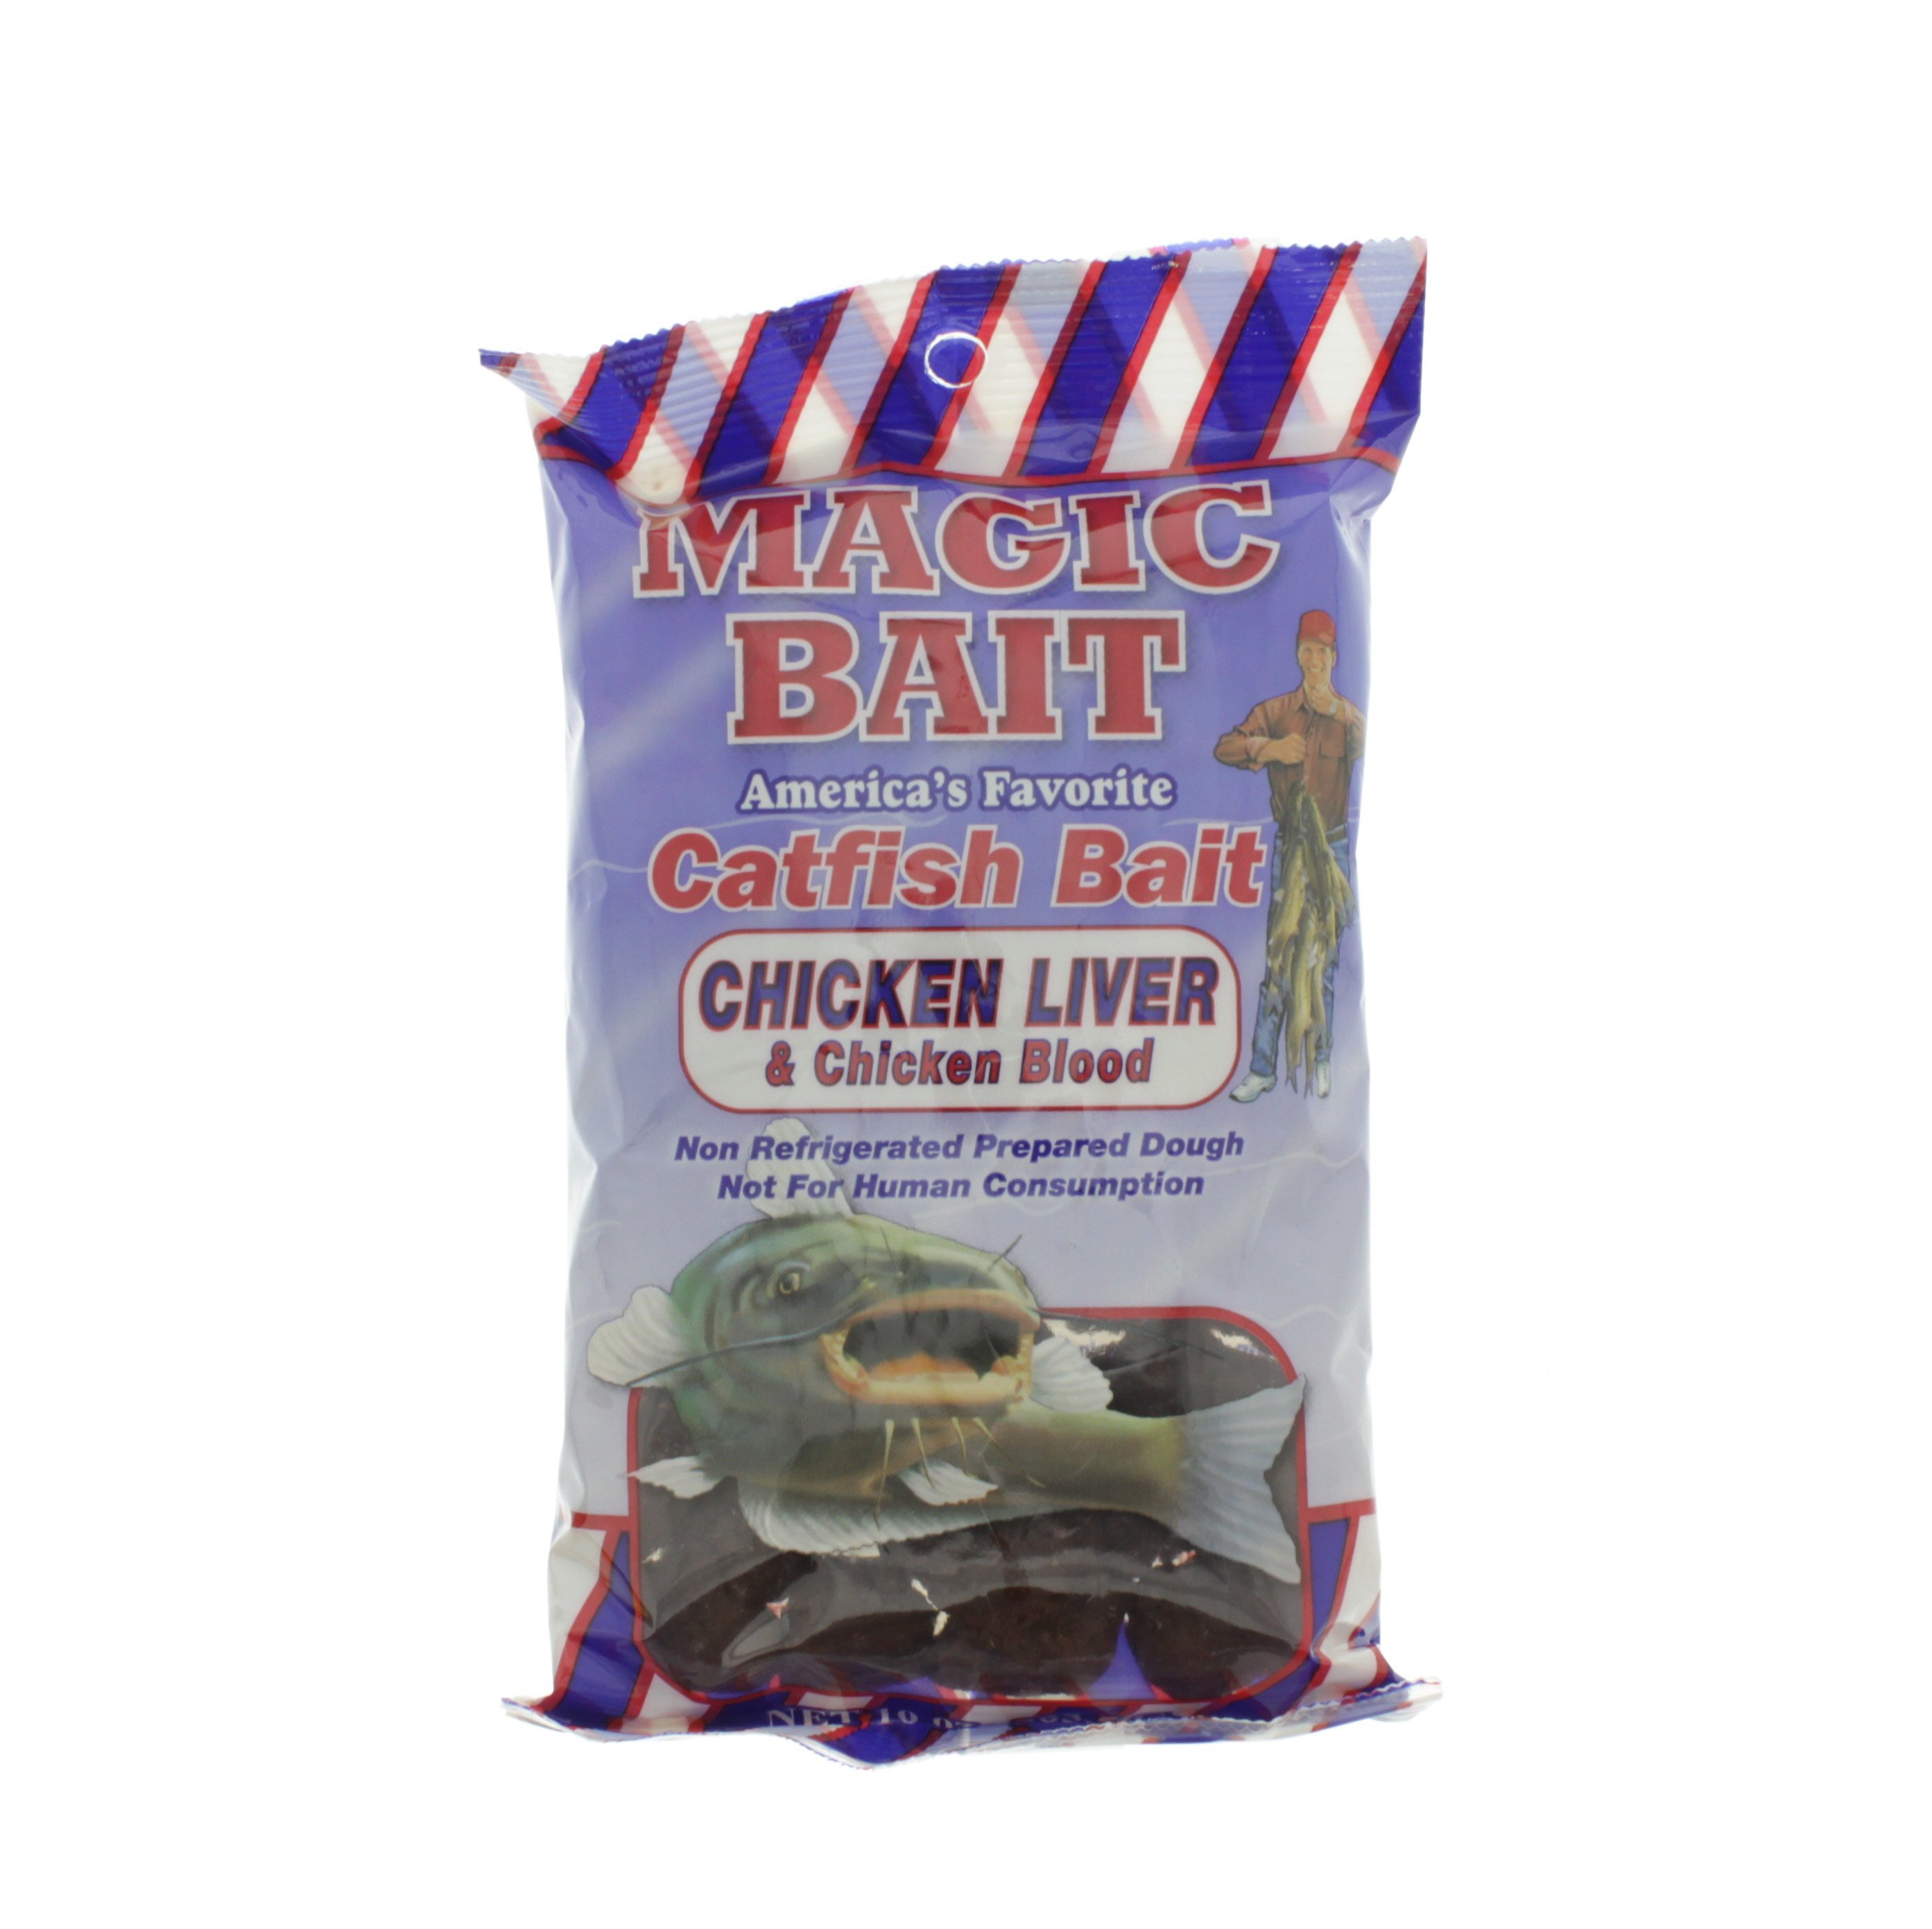 Magic Bait Catfish Bait Chicken Liver & Chicken Blood